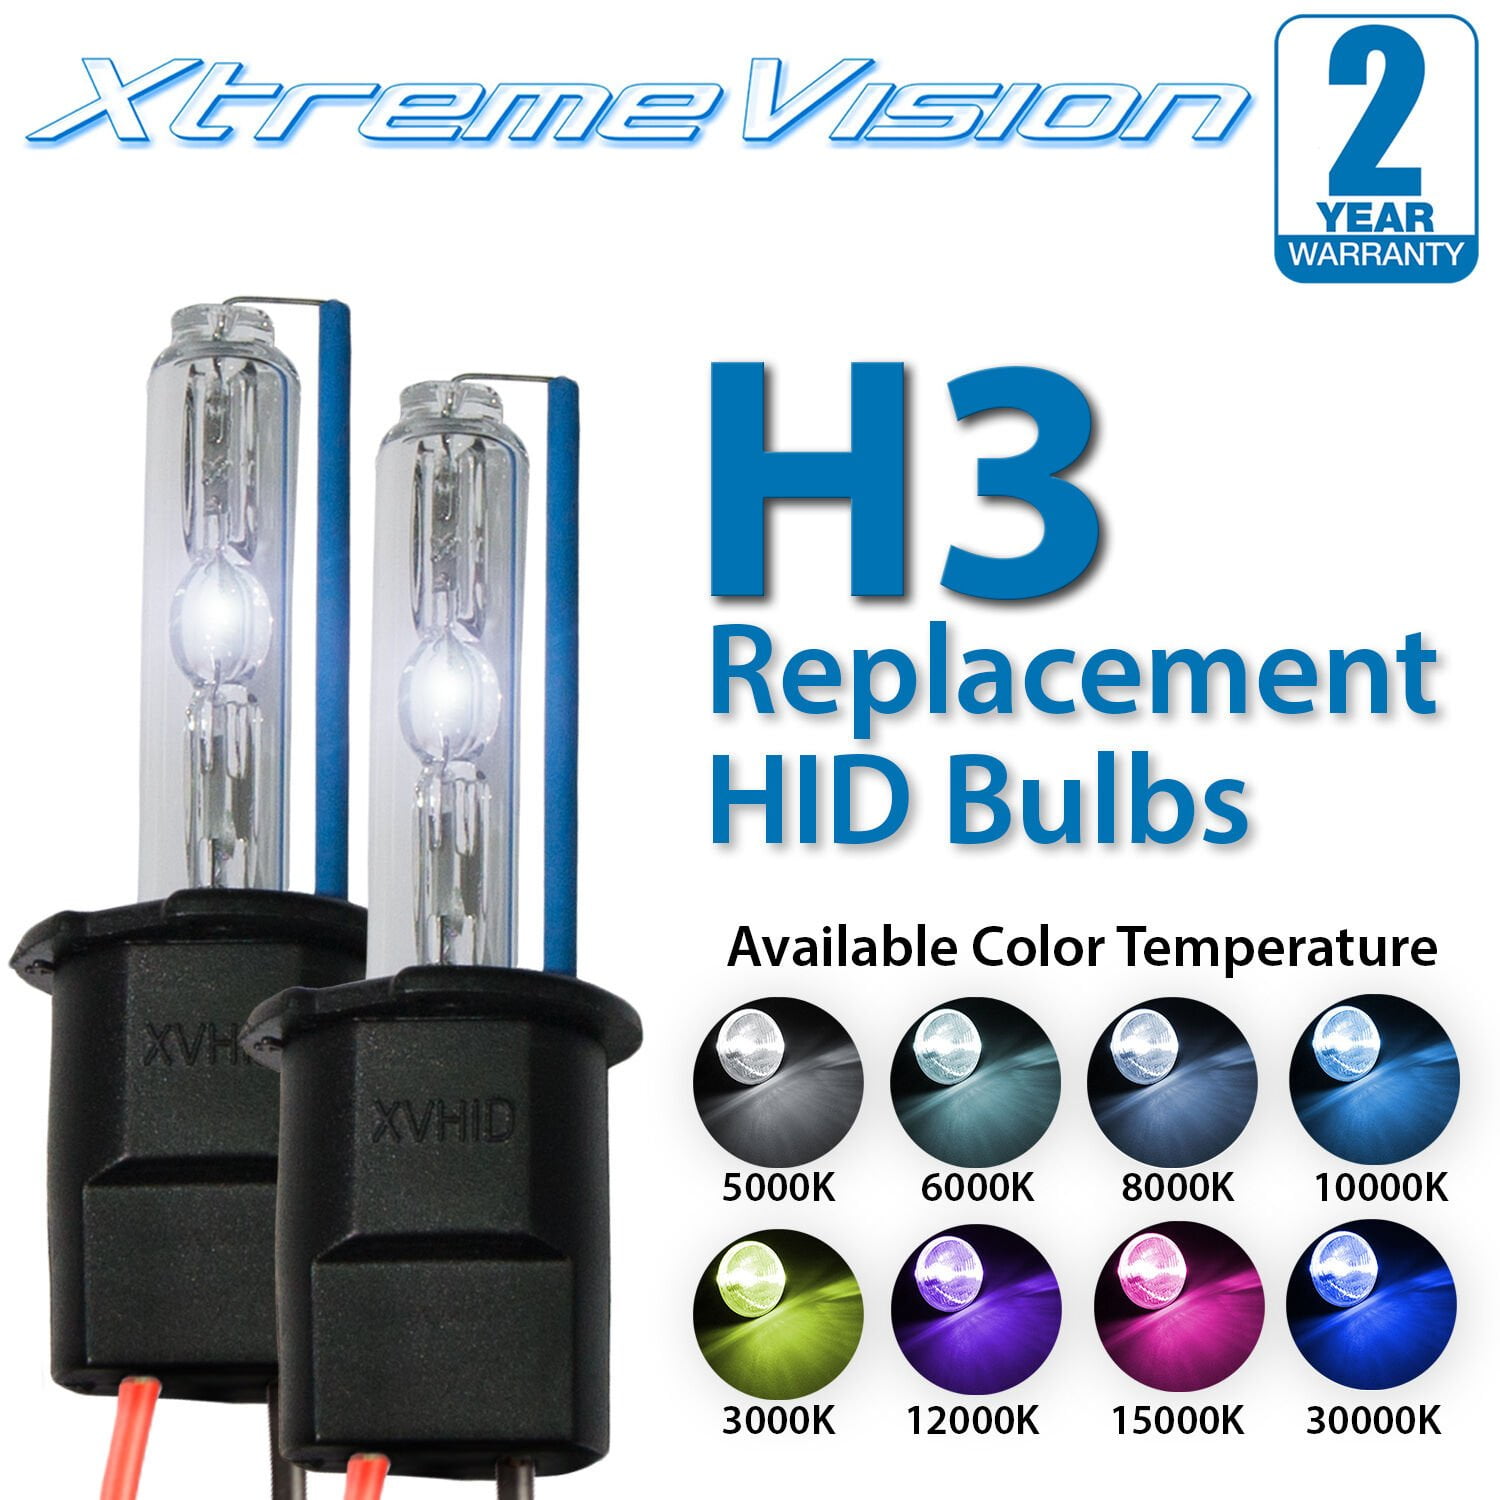 Xtremevision HID Xenon Replacement Bulbs 1 Pair Medium Blue H3 8000K 